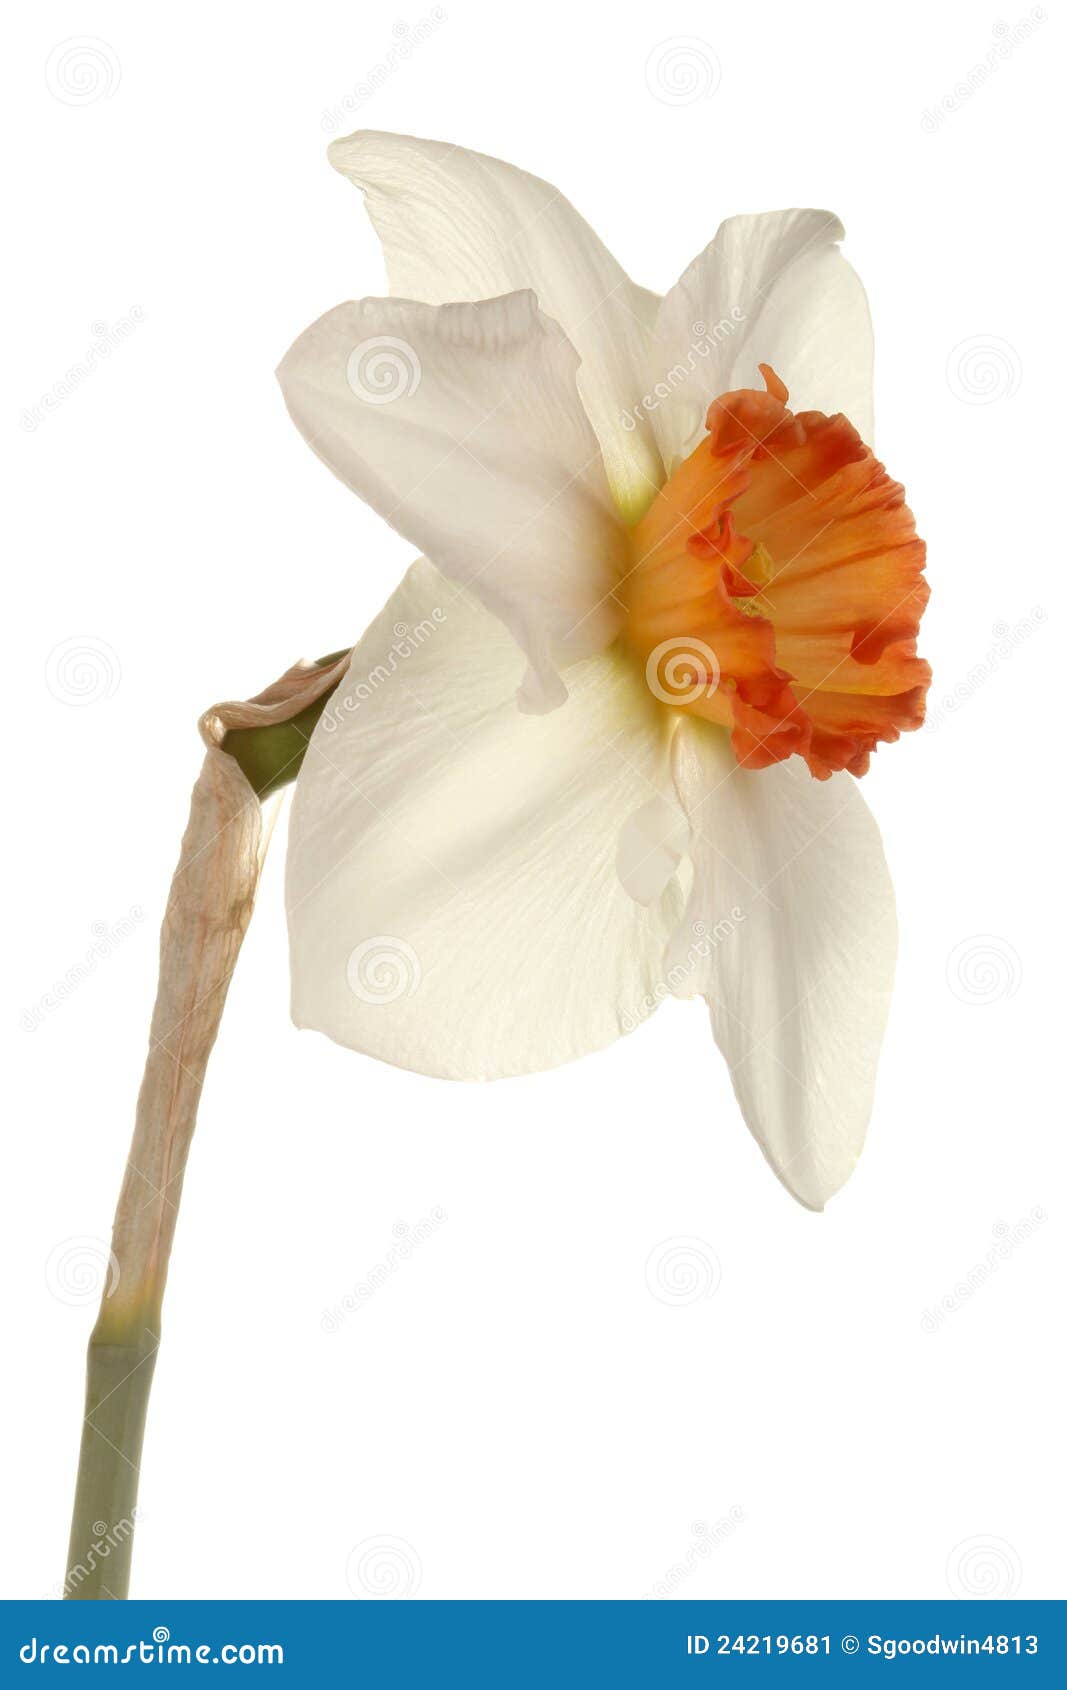 single flower of a daffodil cultivar